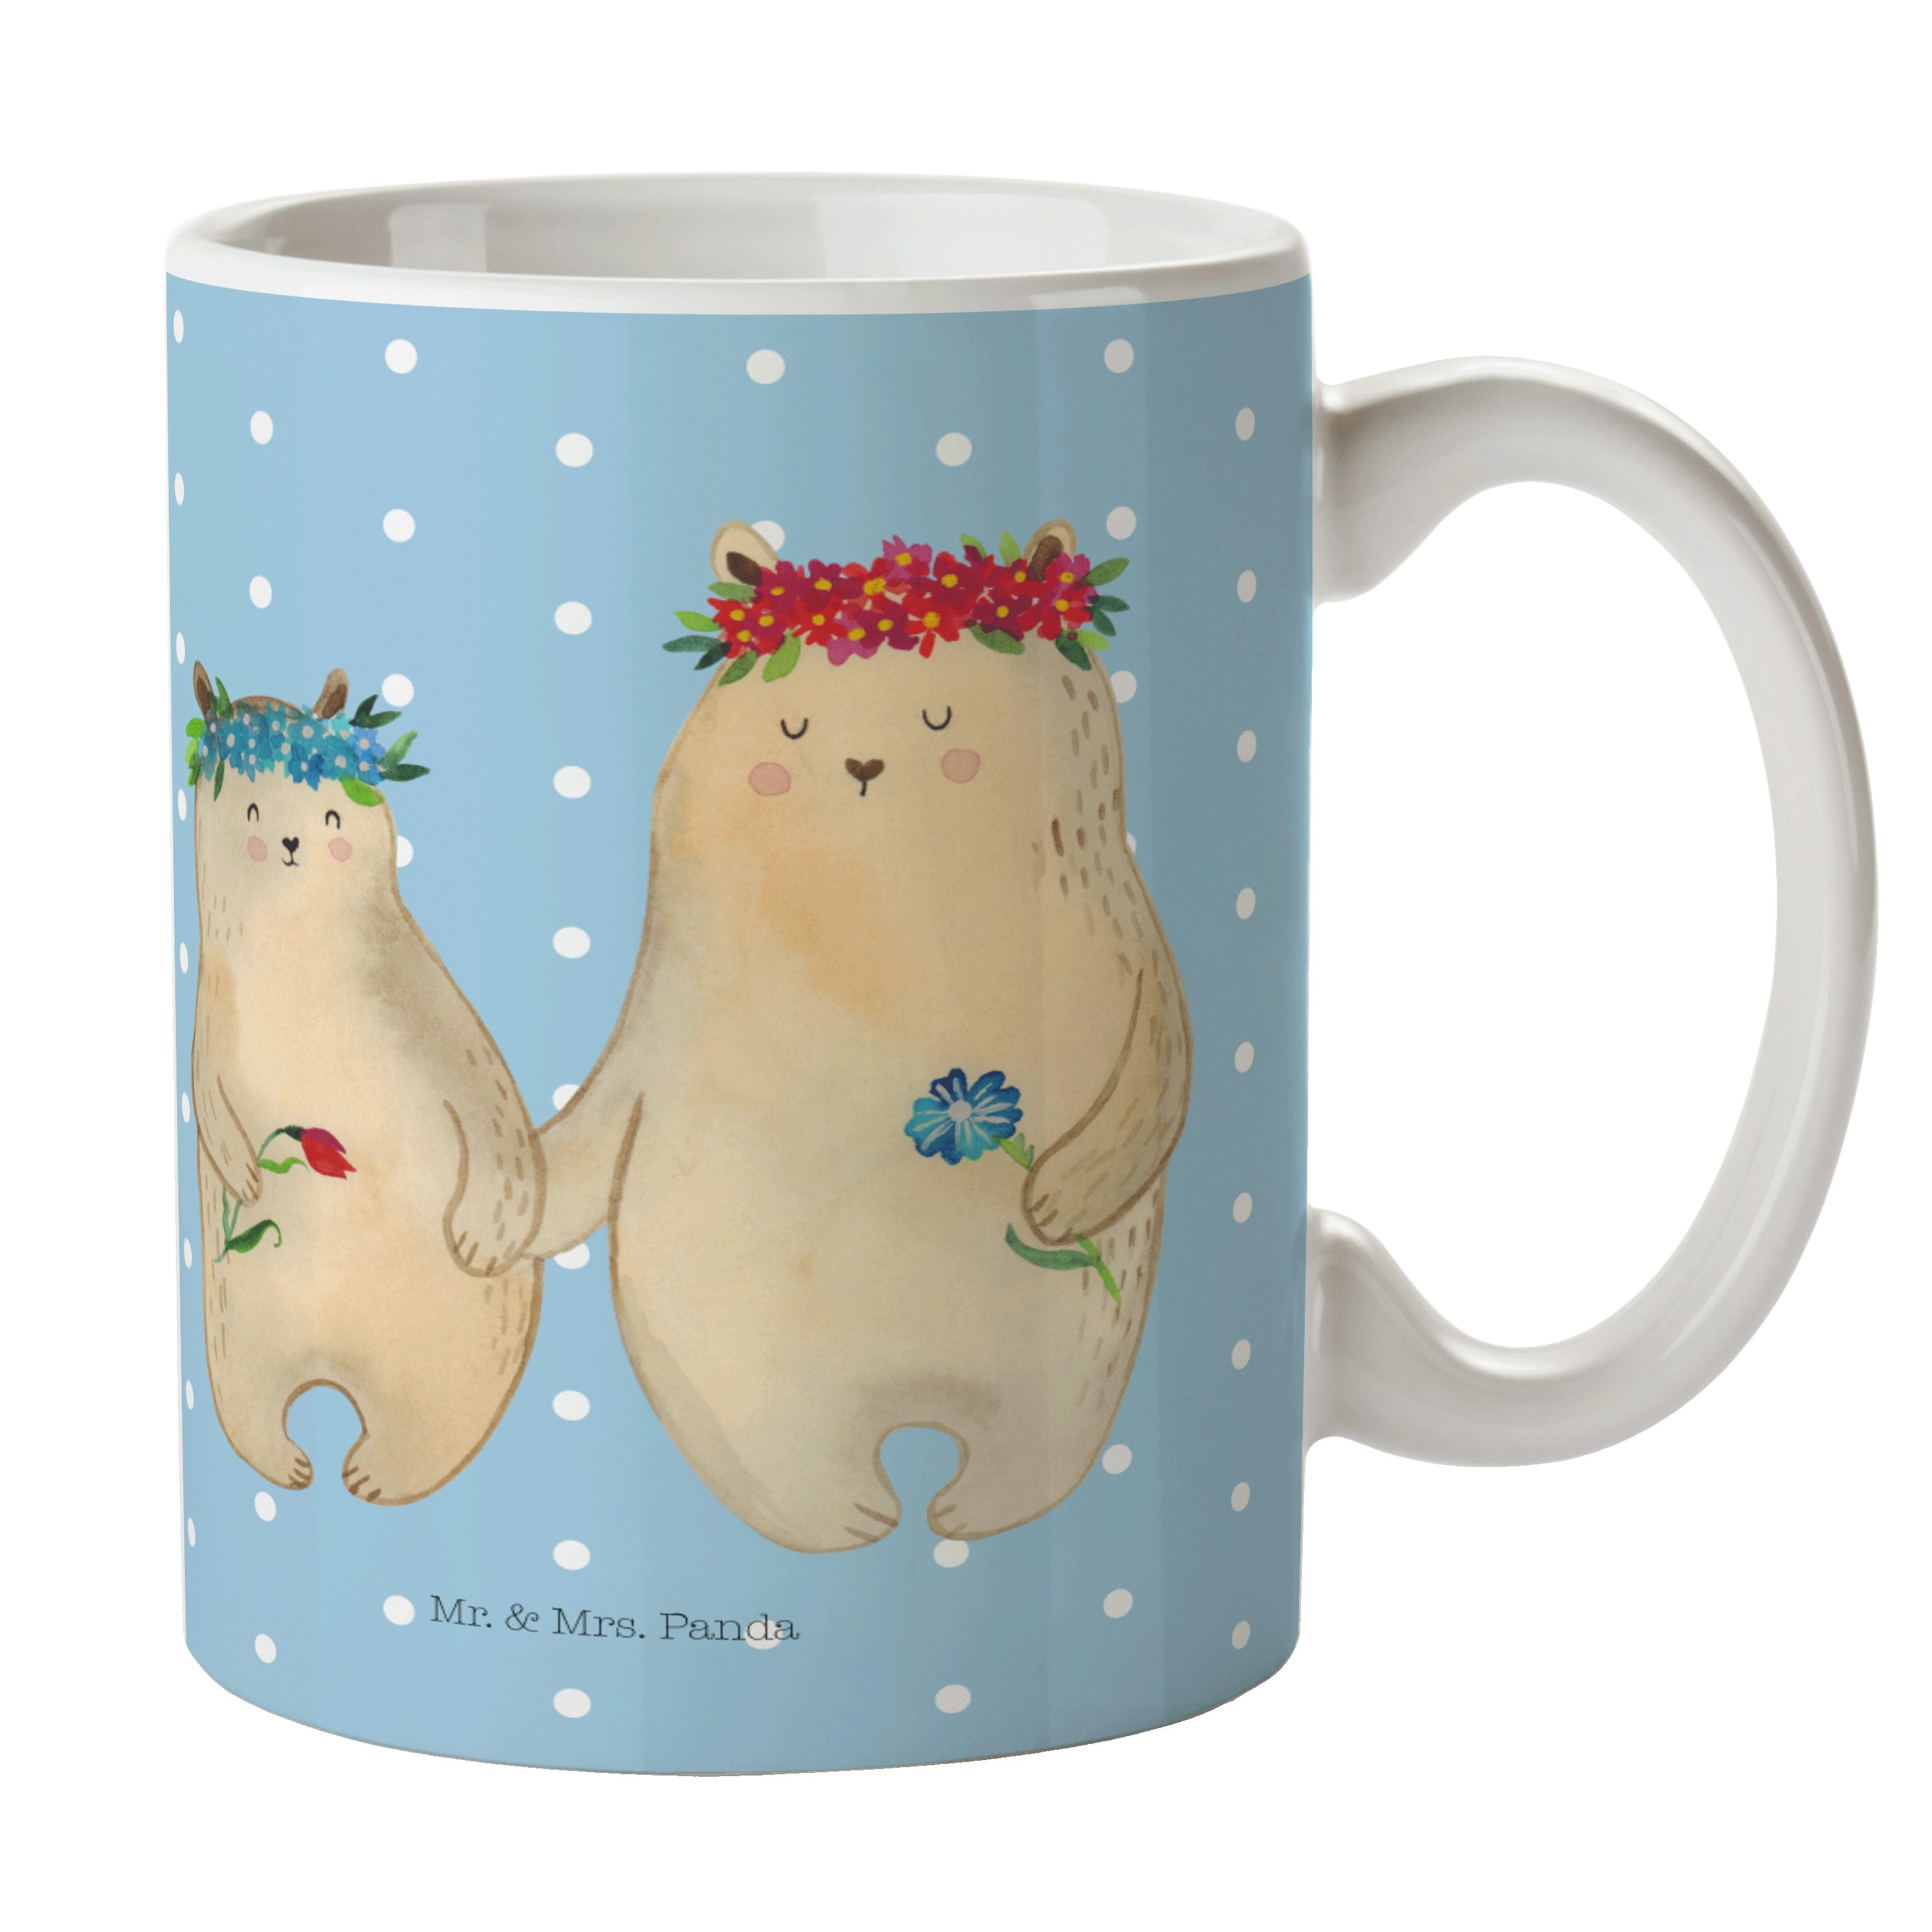 Mr. & Mrs. Panda Tasse Bären mit Blumenkranz - Blau Pastell - Geschenk, Freundinnen, Mama, T, Keramik